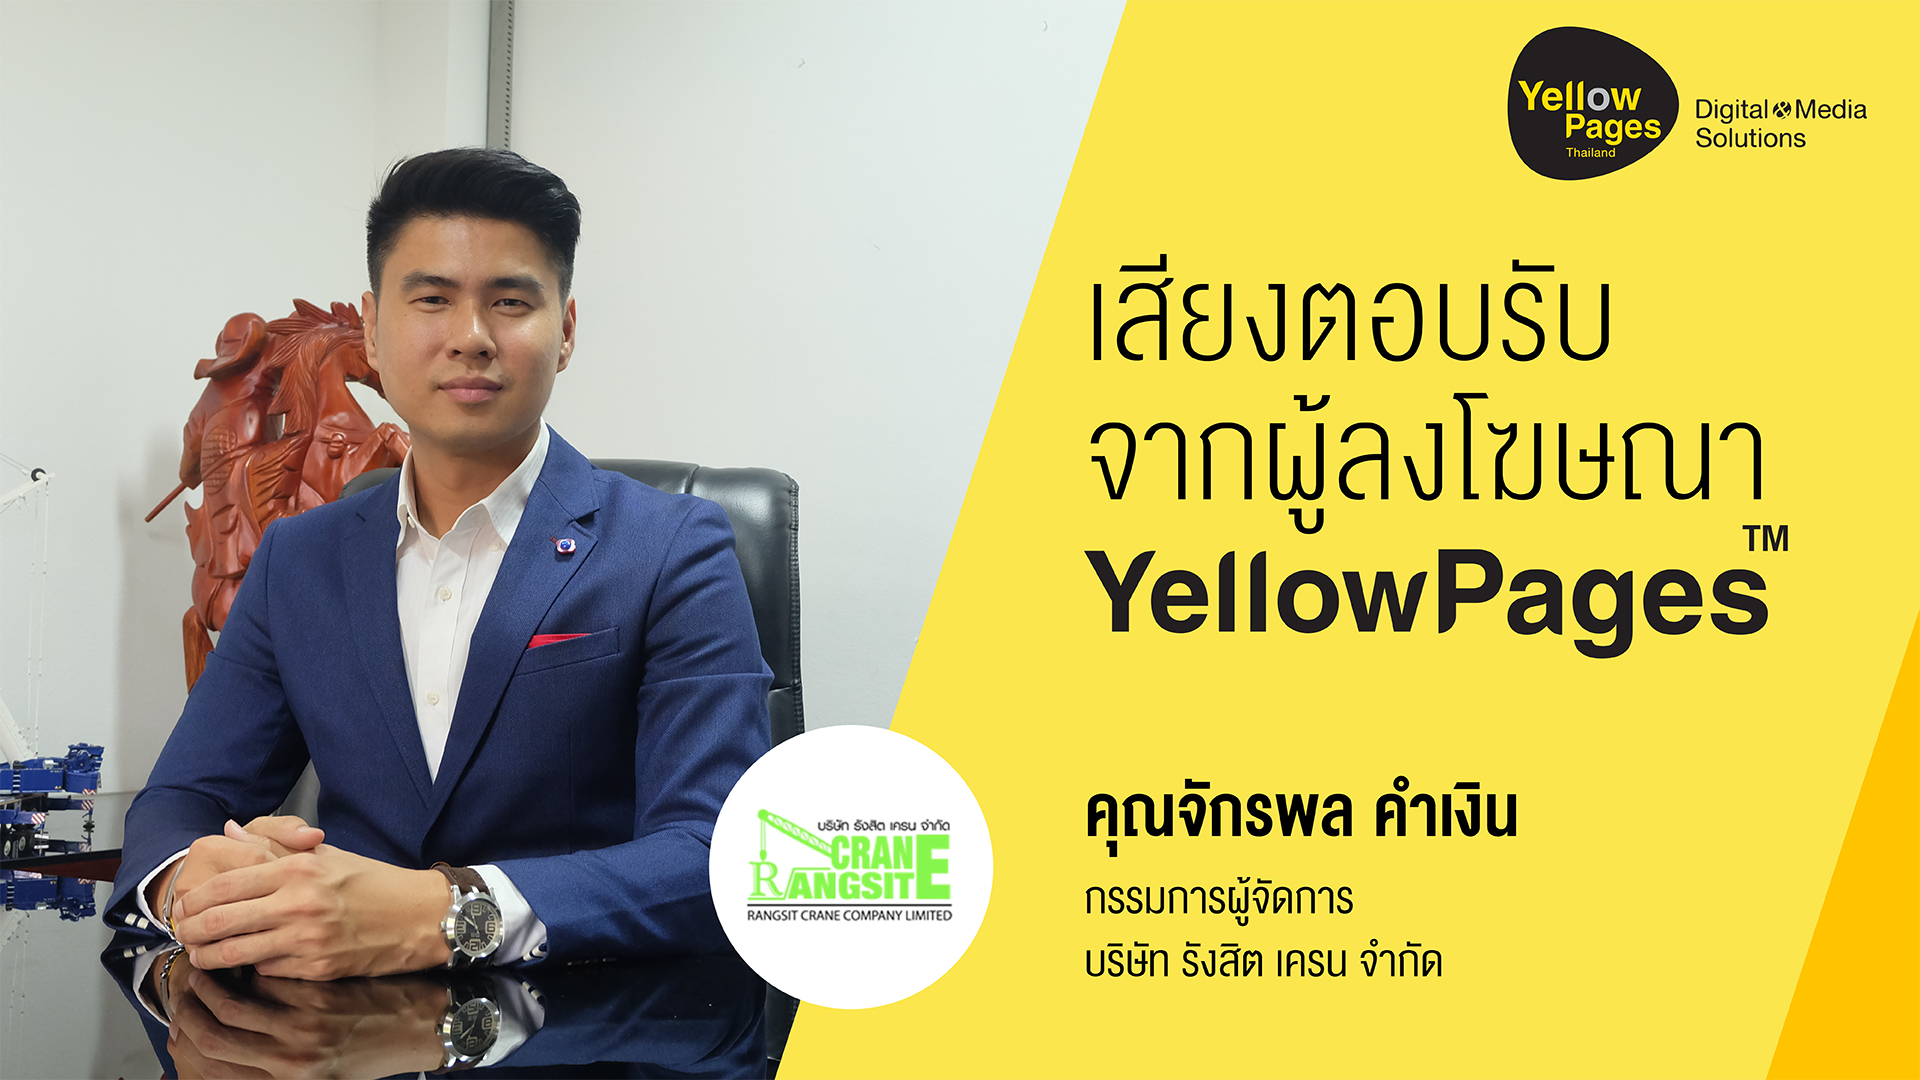 คุณจักรพล คำเงิน กรรมการผู้จัดการ บริษัท รังสิต เครน จำกัด - ลงโฆษณากับ Thailand YellowPages